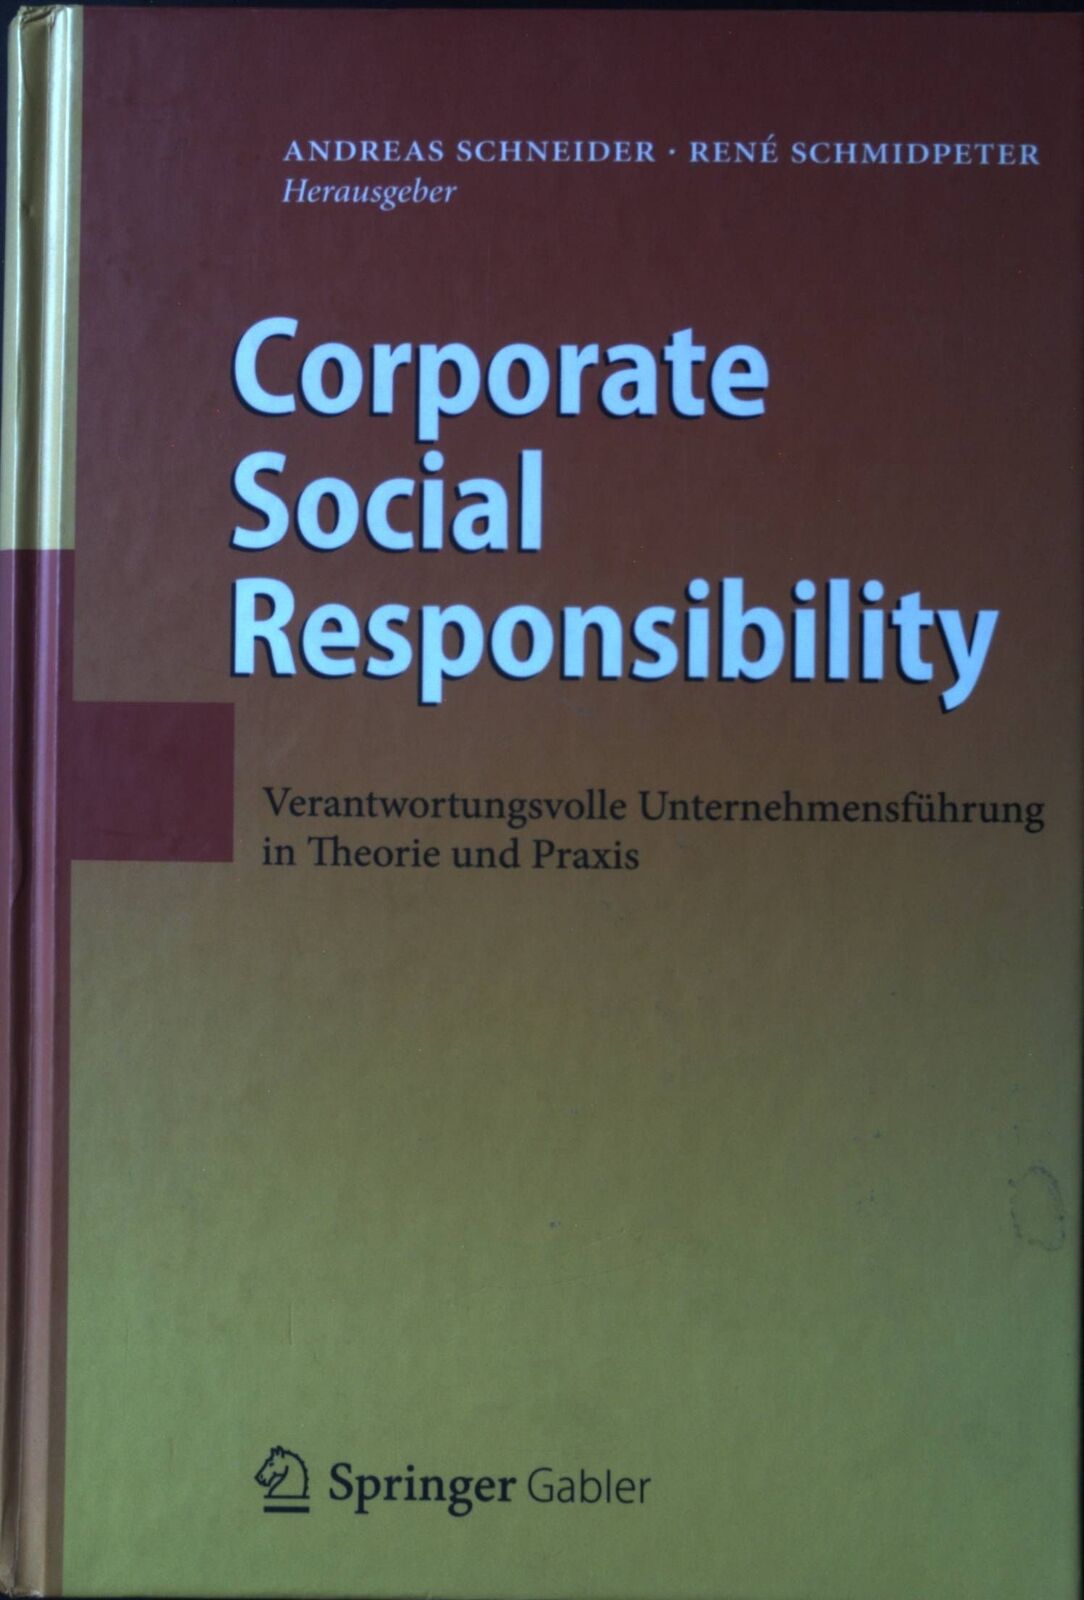 Corporate Social Responsibility : verantwortungsvolle Unternehmensführung in The - Schneider, Andreas und René Schmidpeter